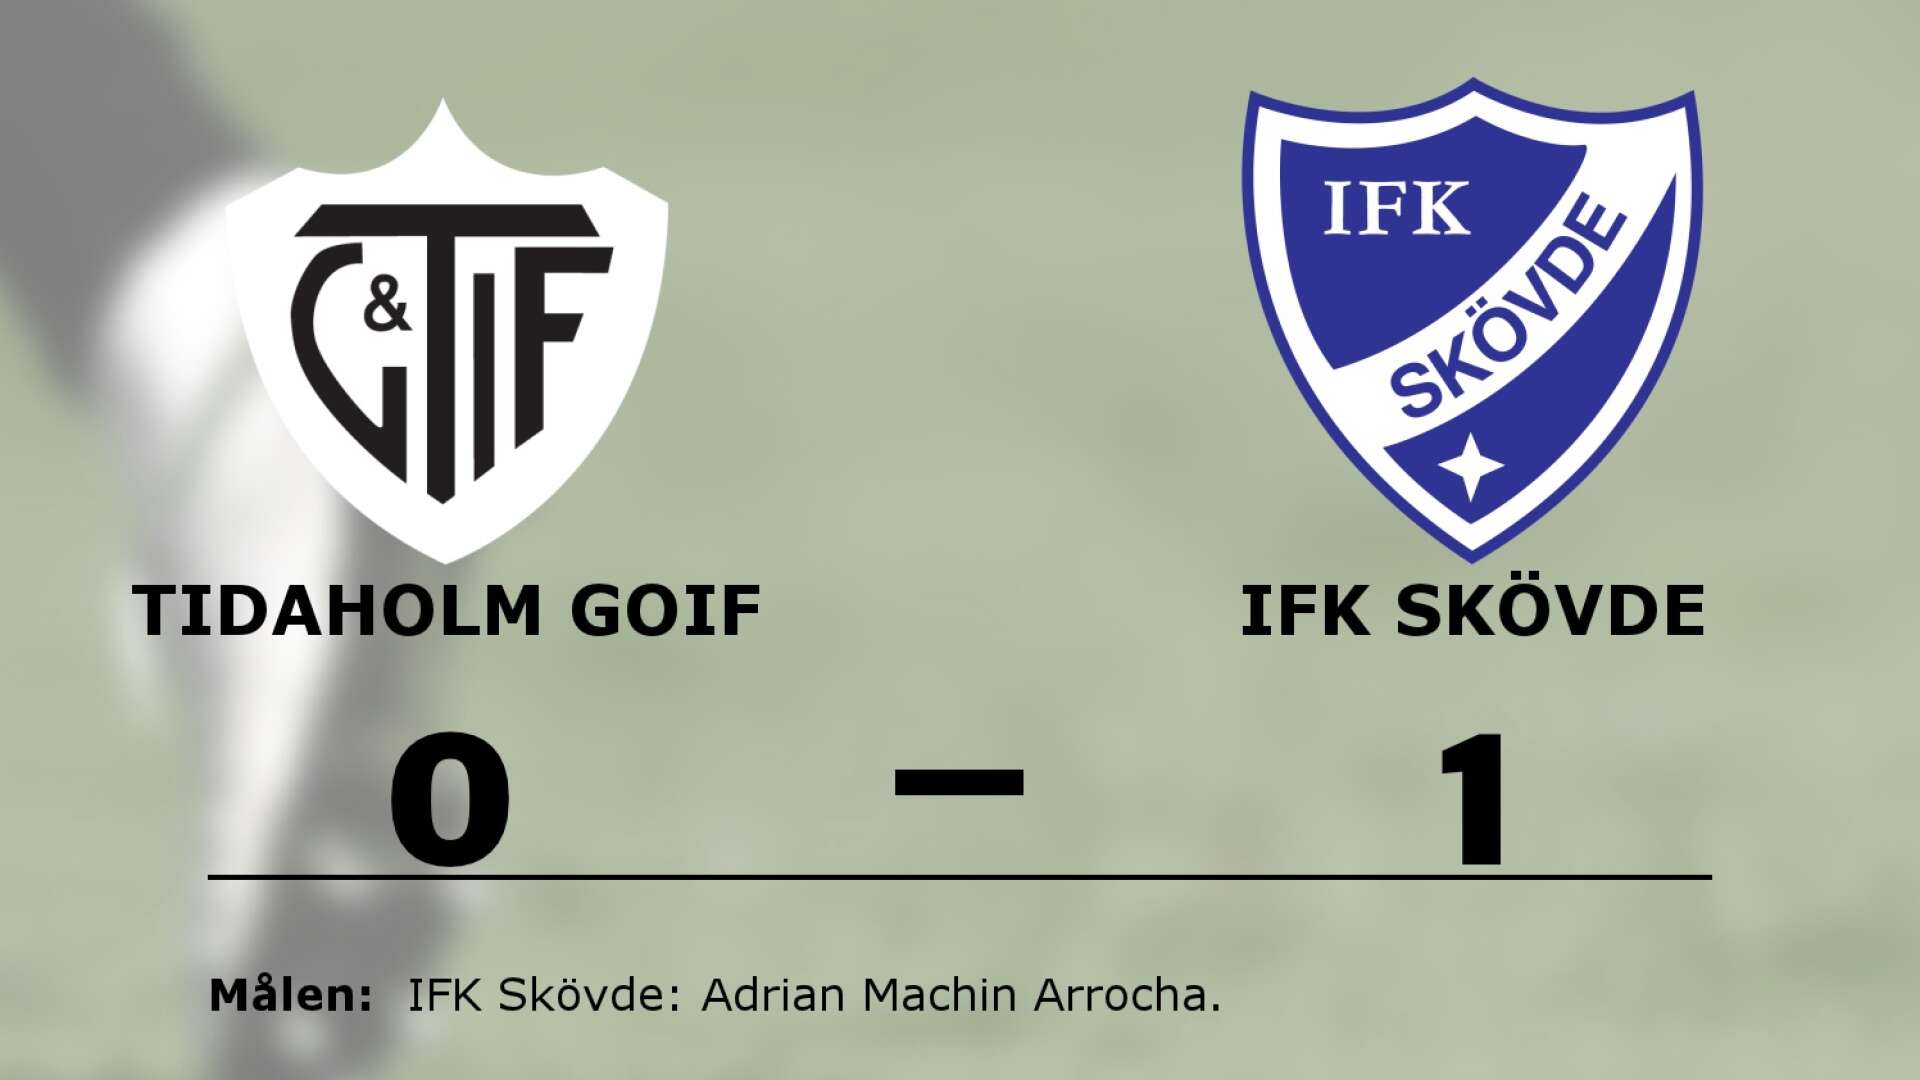 Tidaholm GoIF förlorade mot IFK Skövde